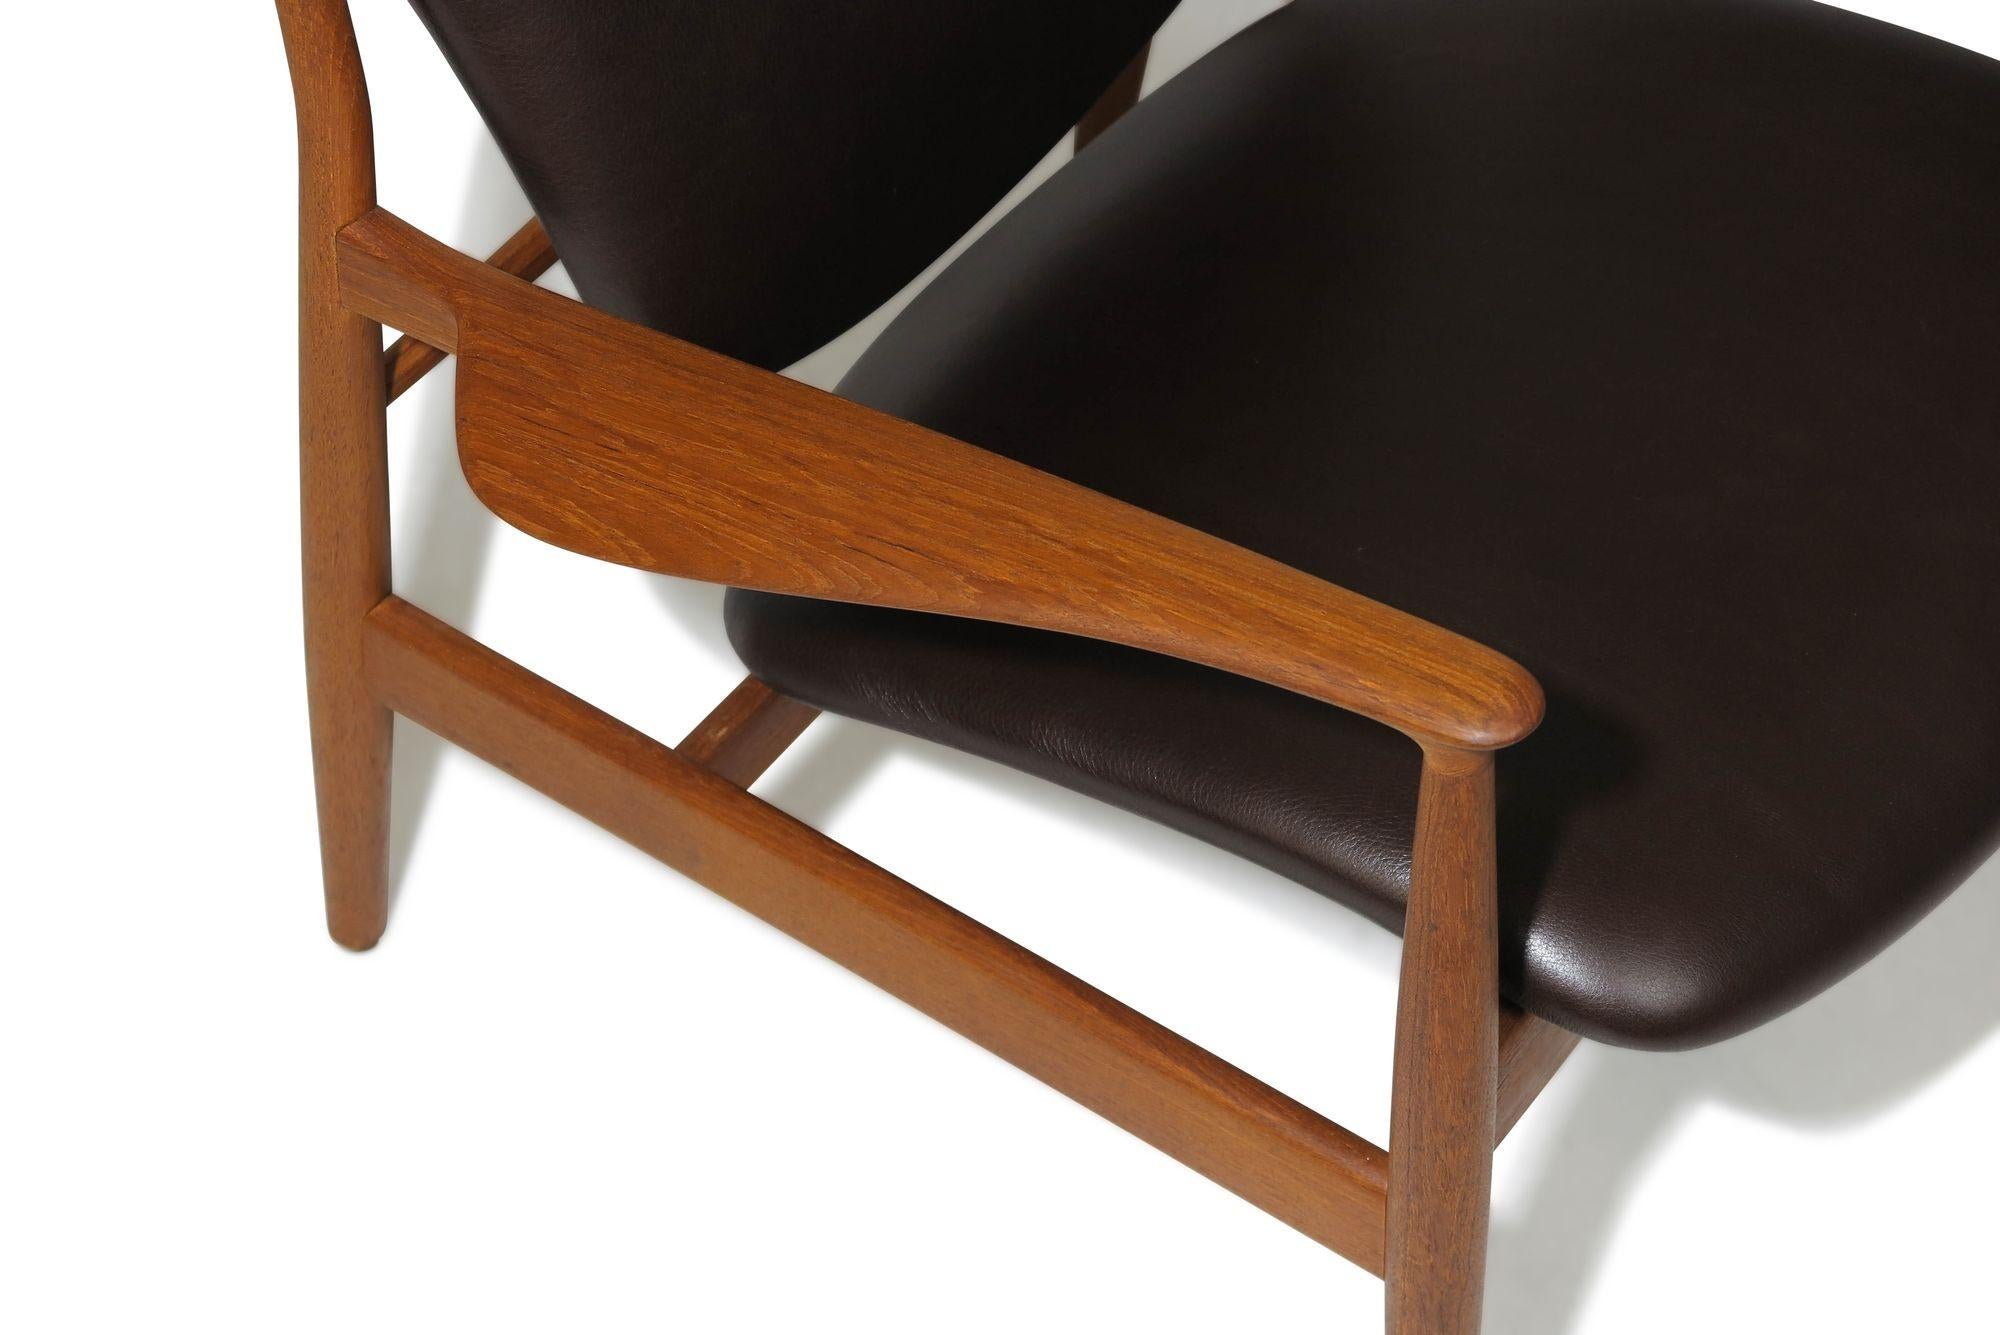 Chaise longue scandinave conçue par Finn Juhl pour France & Daverkosen, Danemark. Le modèle FD 136 est habilement fabriqué à la main à partir d'un magnifique bois de teck ancien. La chaise est dotée d'accoudoirs élégamment sculptés et d'une assise